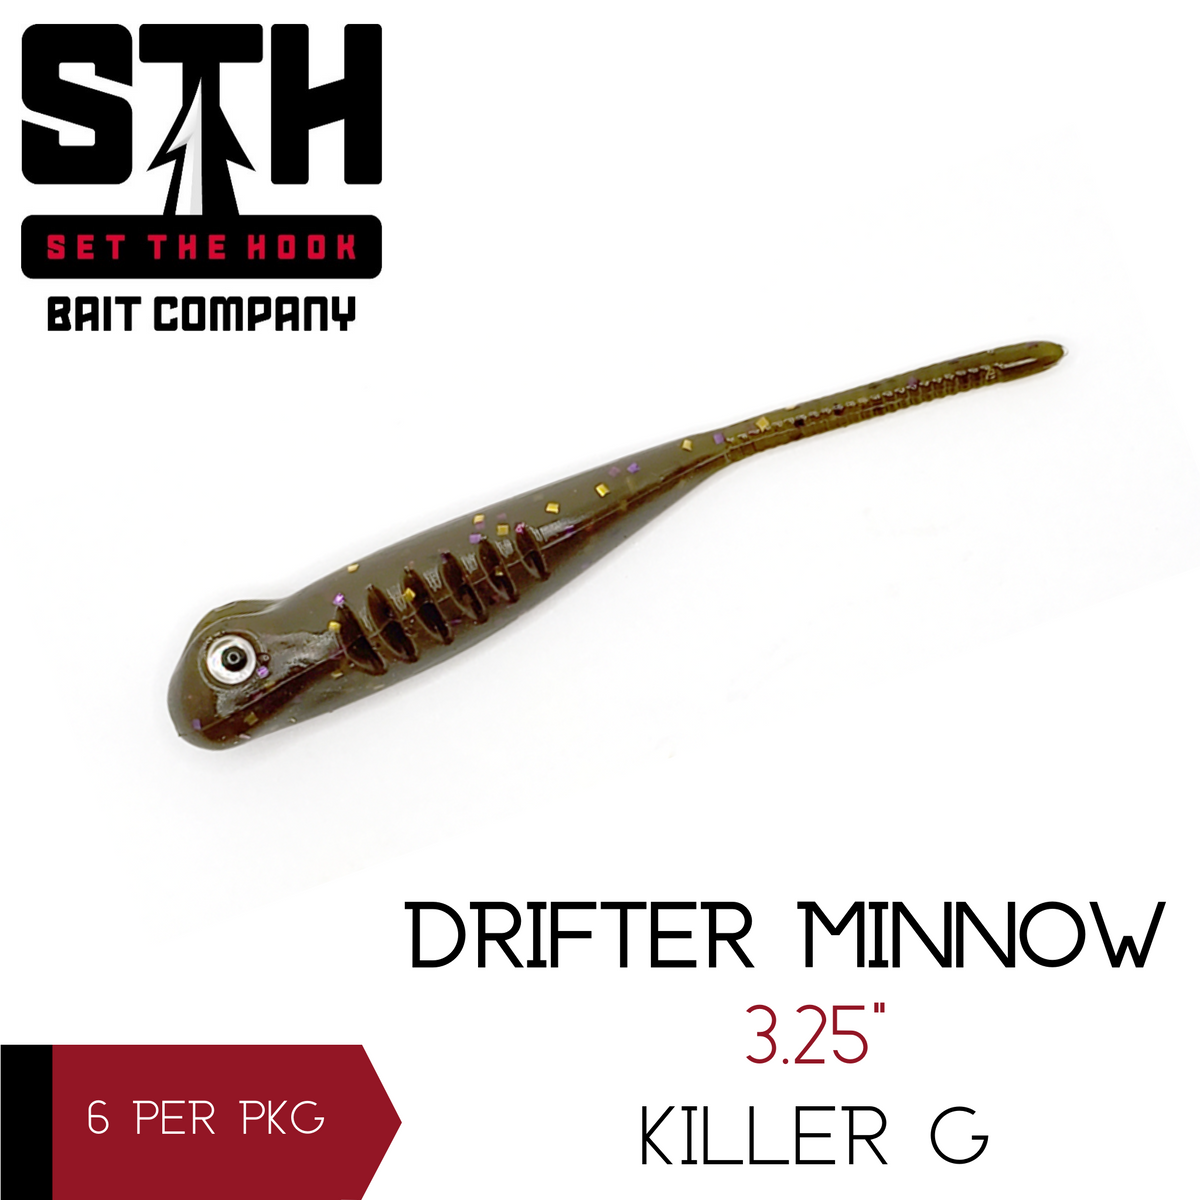 Set The Hook-The Drifter Minnow 3.25